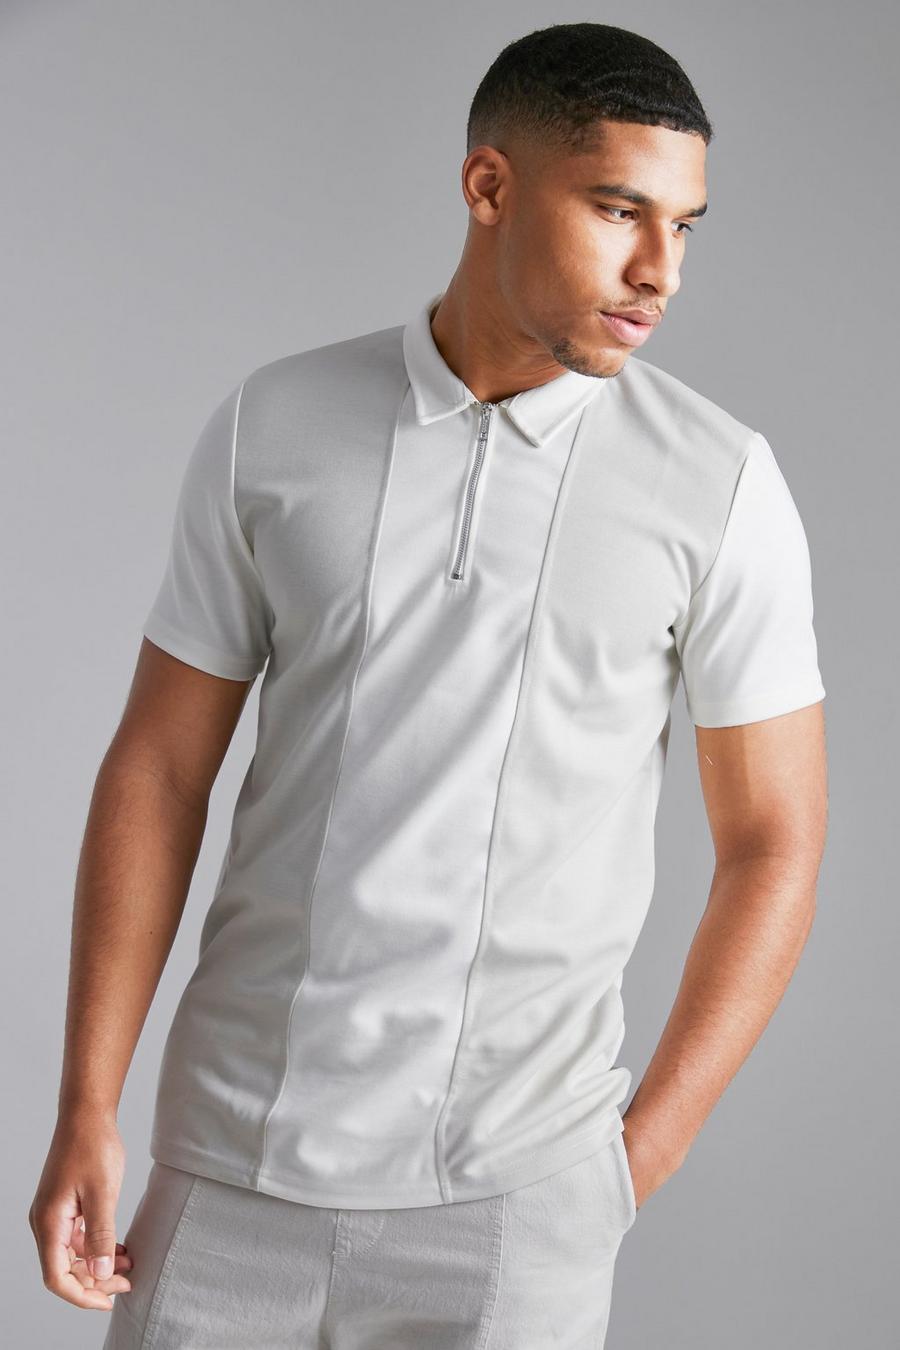 שמנת bianco חולצת פולו אלגנטית בגזרה צרה עם פאנל בצבע מנוגד, לגברים גבוהים image number 1